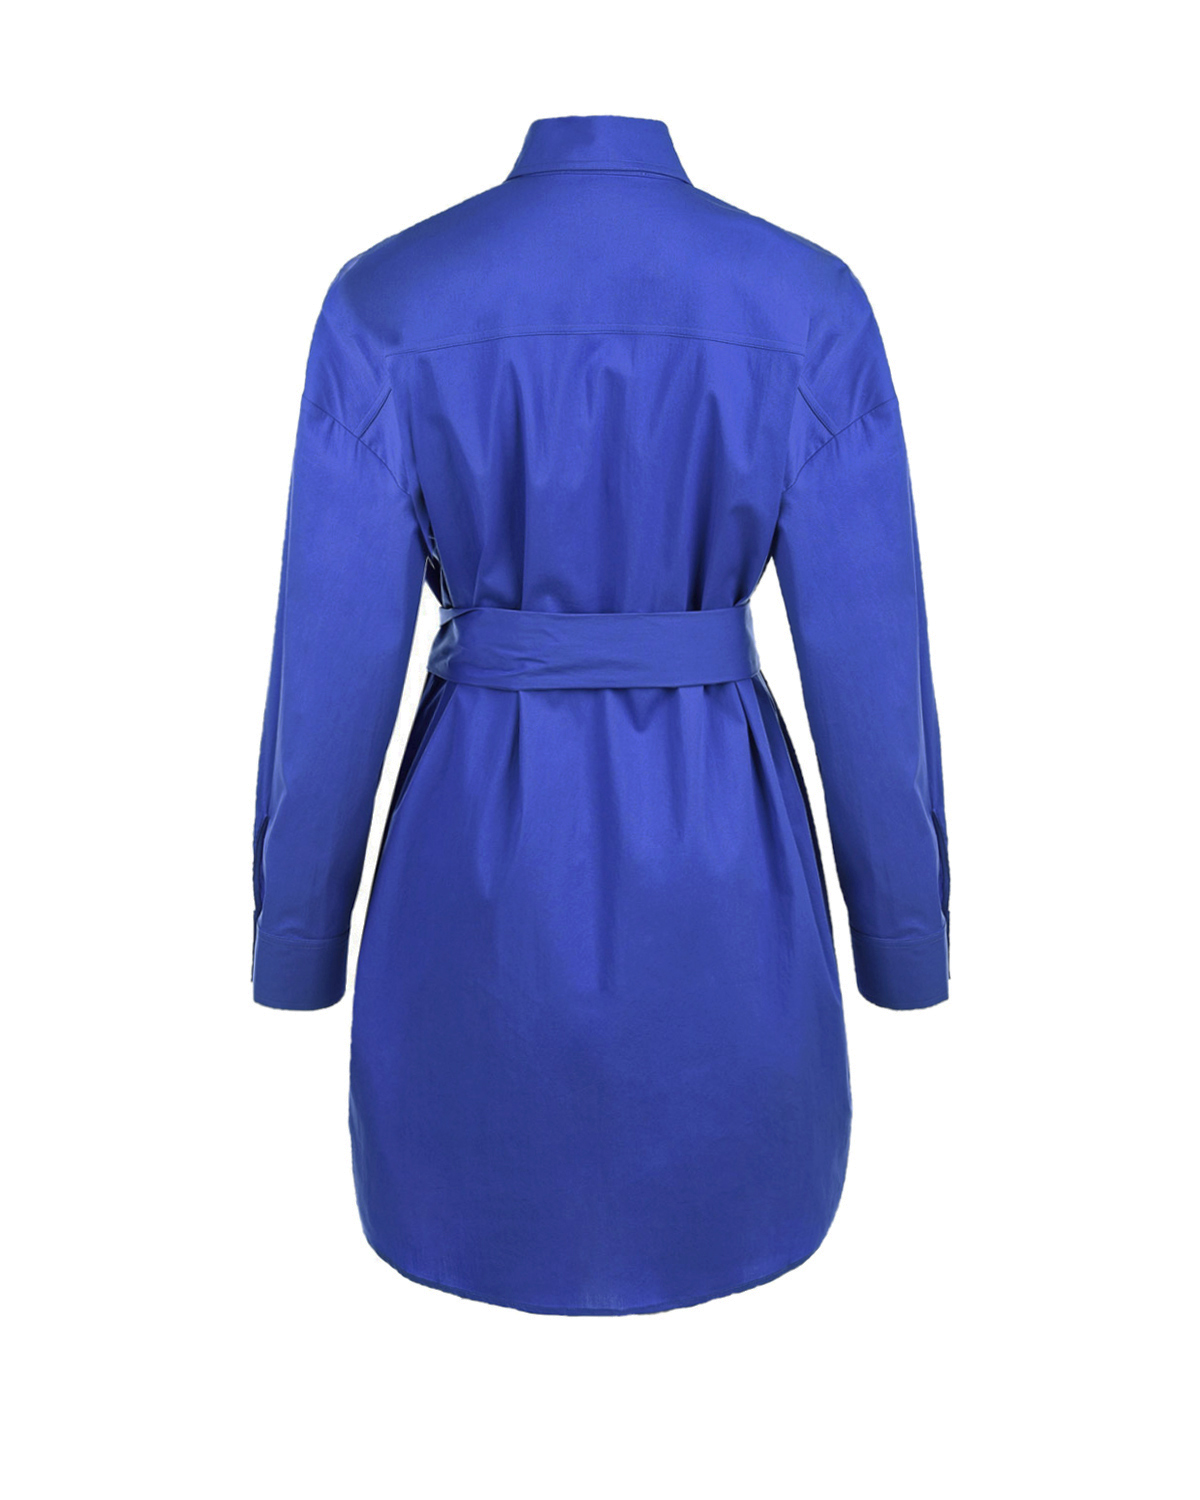 Синее платье-рубашка OLIMPIA Pietro Brunelli, размер 40, цвет синий - фото 6